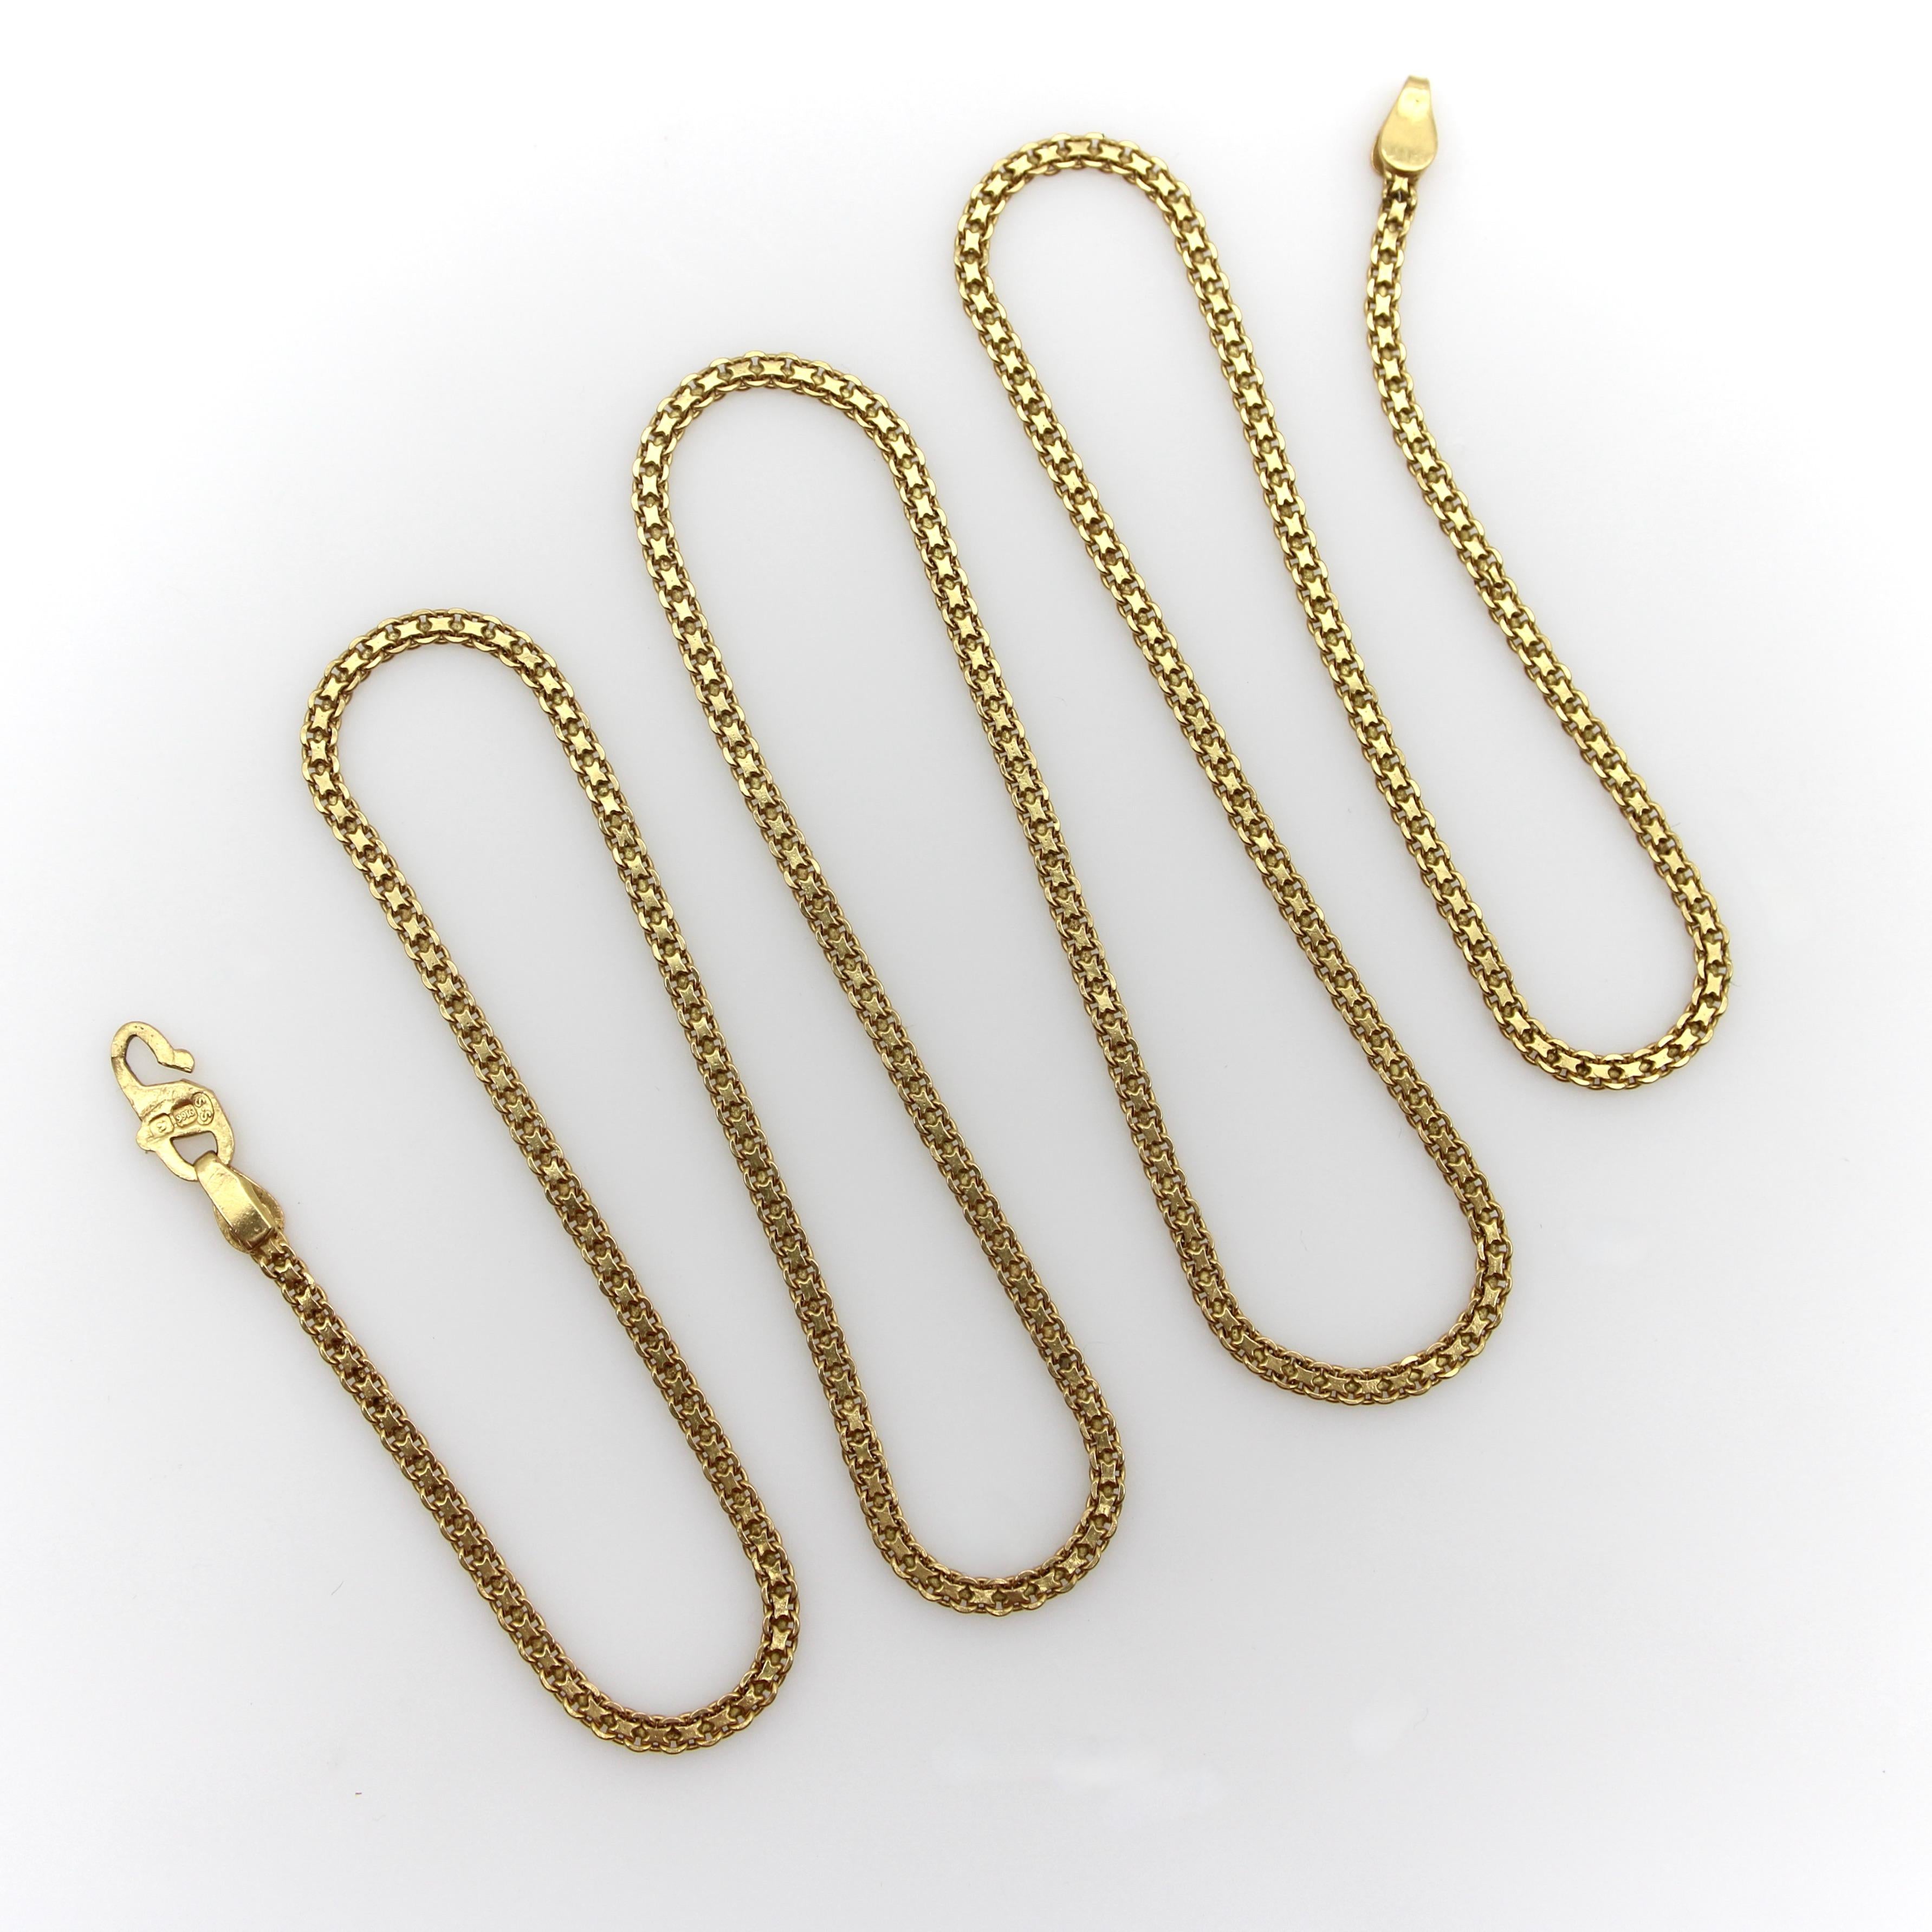 Cette chaîne Bismark extra longue est fabriquée à la main en or 22k et se compose d'un double maillon aplati. Cette magnifique chaîne de 24,5 pouces présente un design classique et une teinte dorée profonde pour laquelle l'or à haut carat est